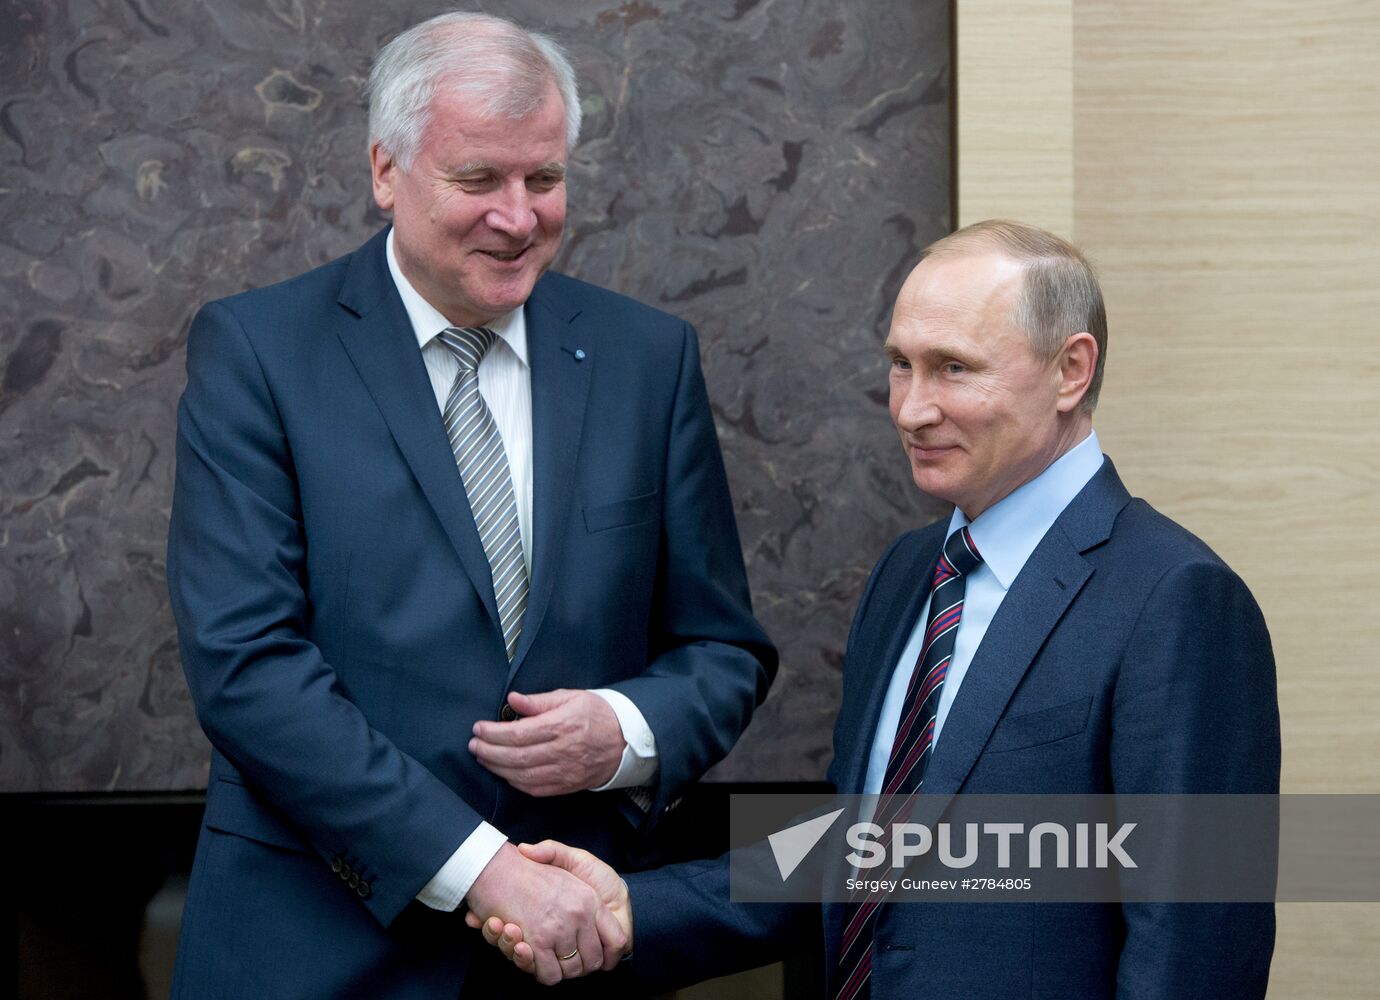 Russian President Vladimir Putin's meeting with Minister-President of Bavaria Horst Seehofer